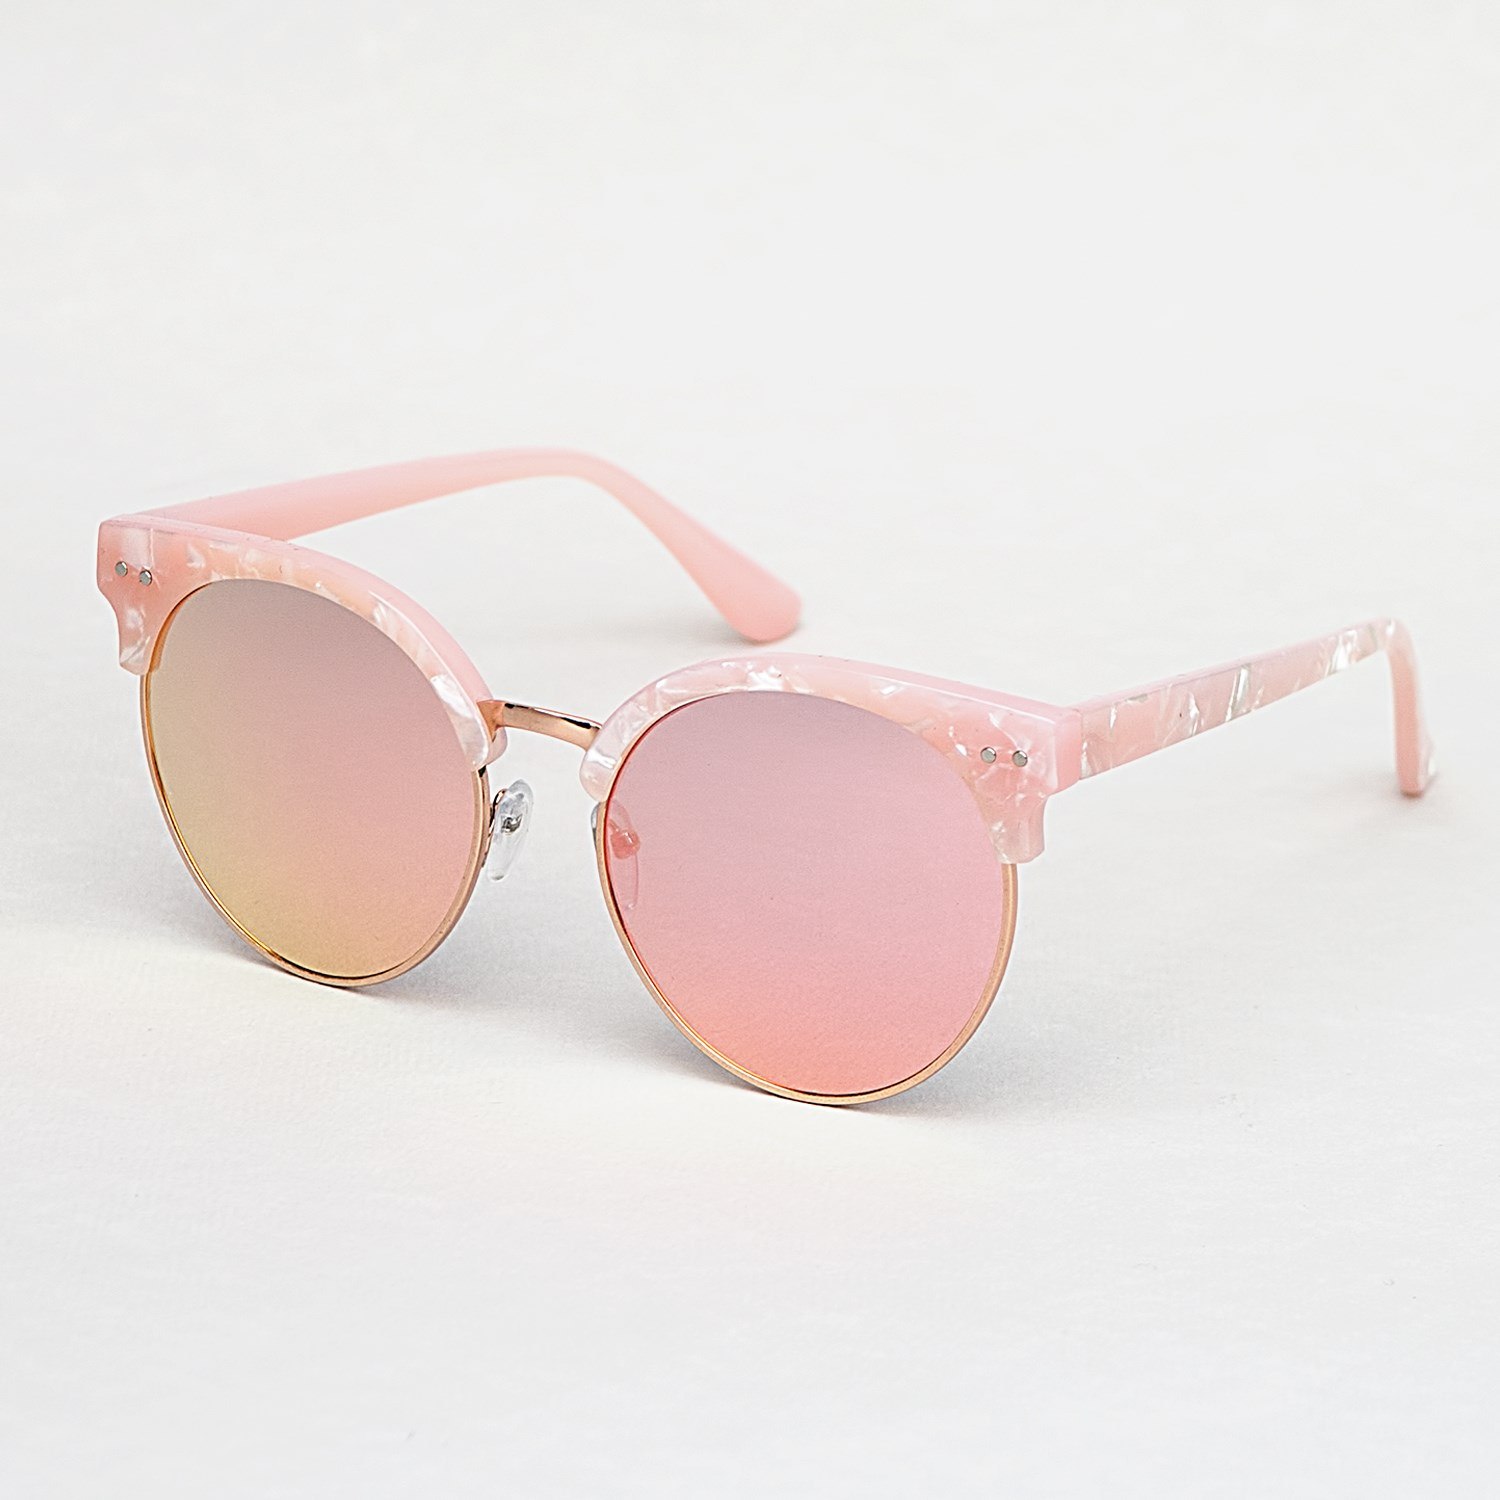 Розовые солнцезащитные очки купить. Розовые солнцезащитные очки. Модные розовые очки. Солнцезащитные очки в розовой оправе. Круглые розовые очки женские.